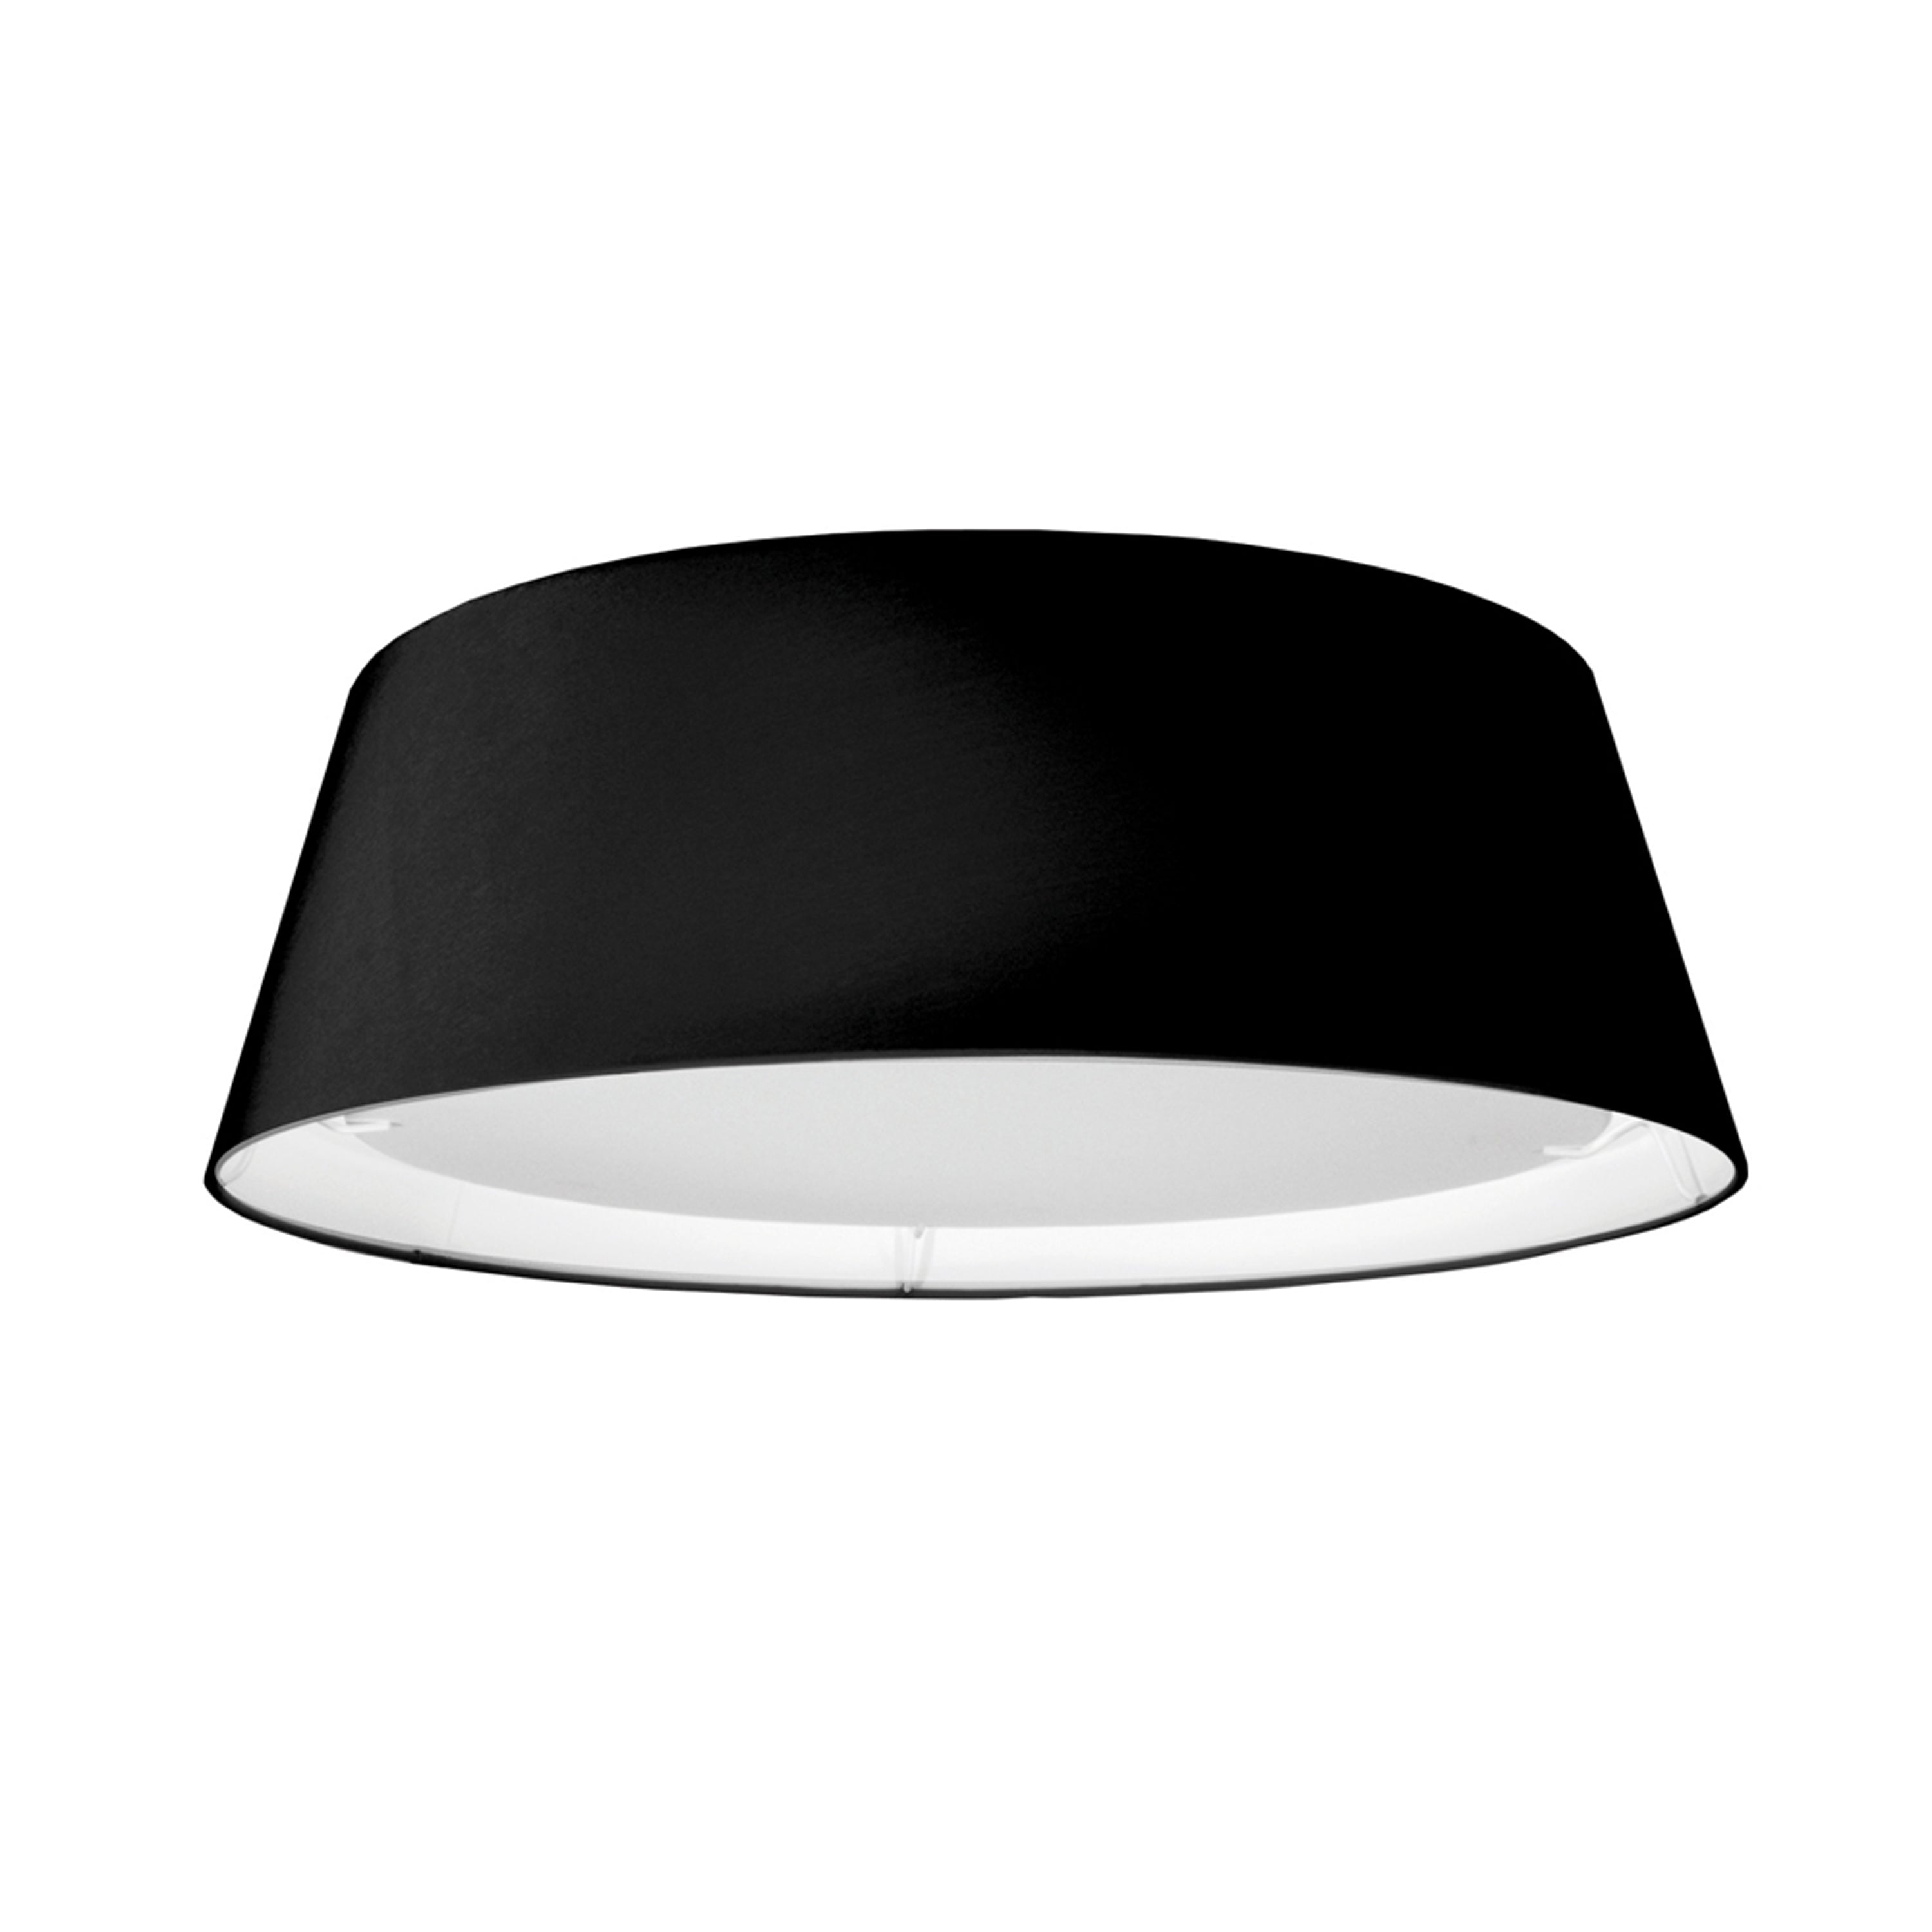 Flush mount  Black INTEGRATED LED - TDLED-17FH-BK | DAINOLITE